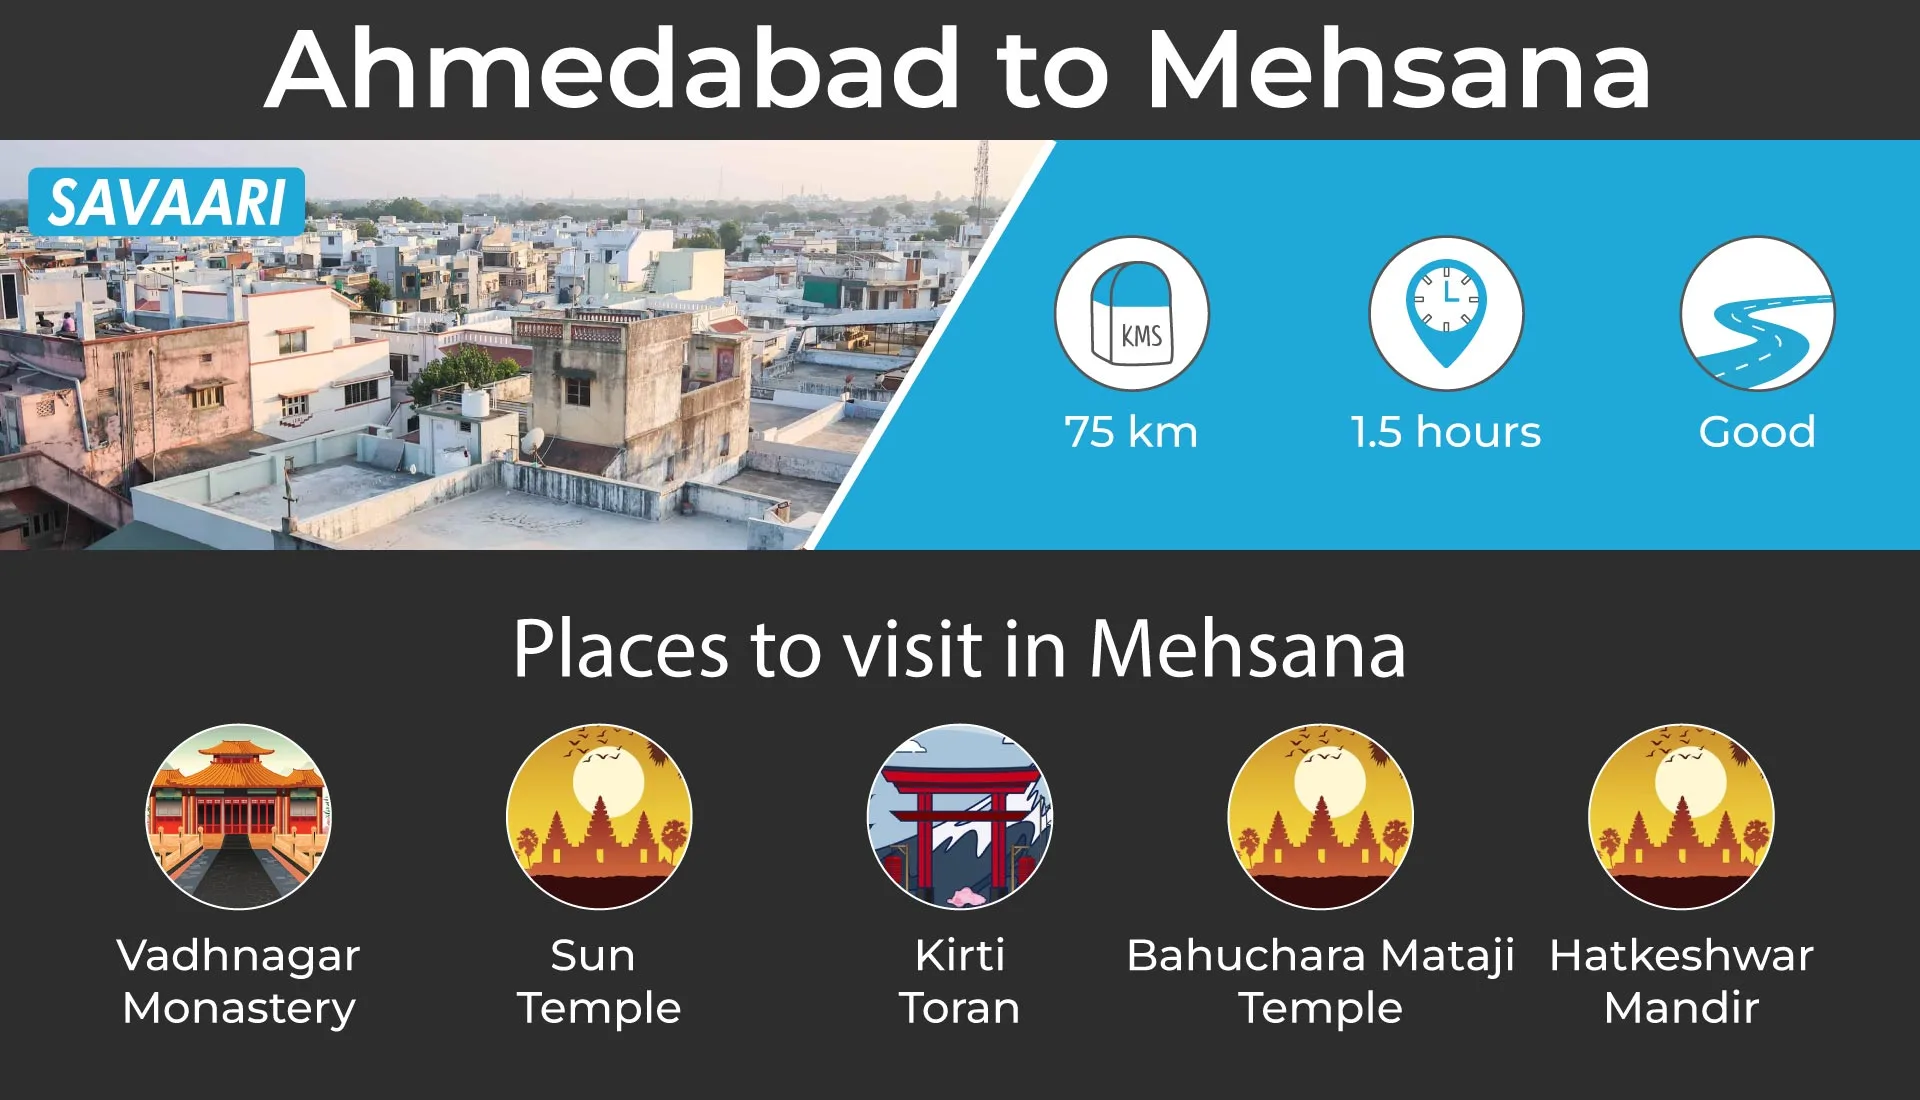 Ahmedabad to Mehsana weekend getaway